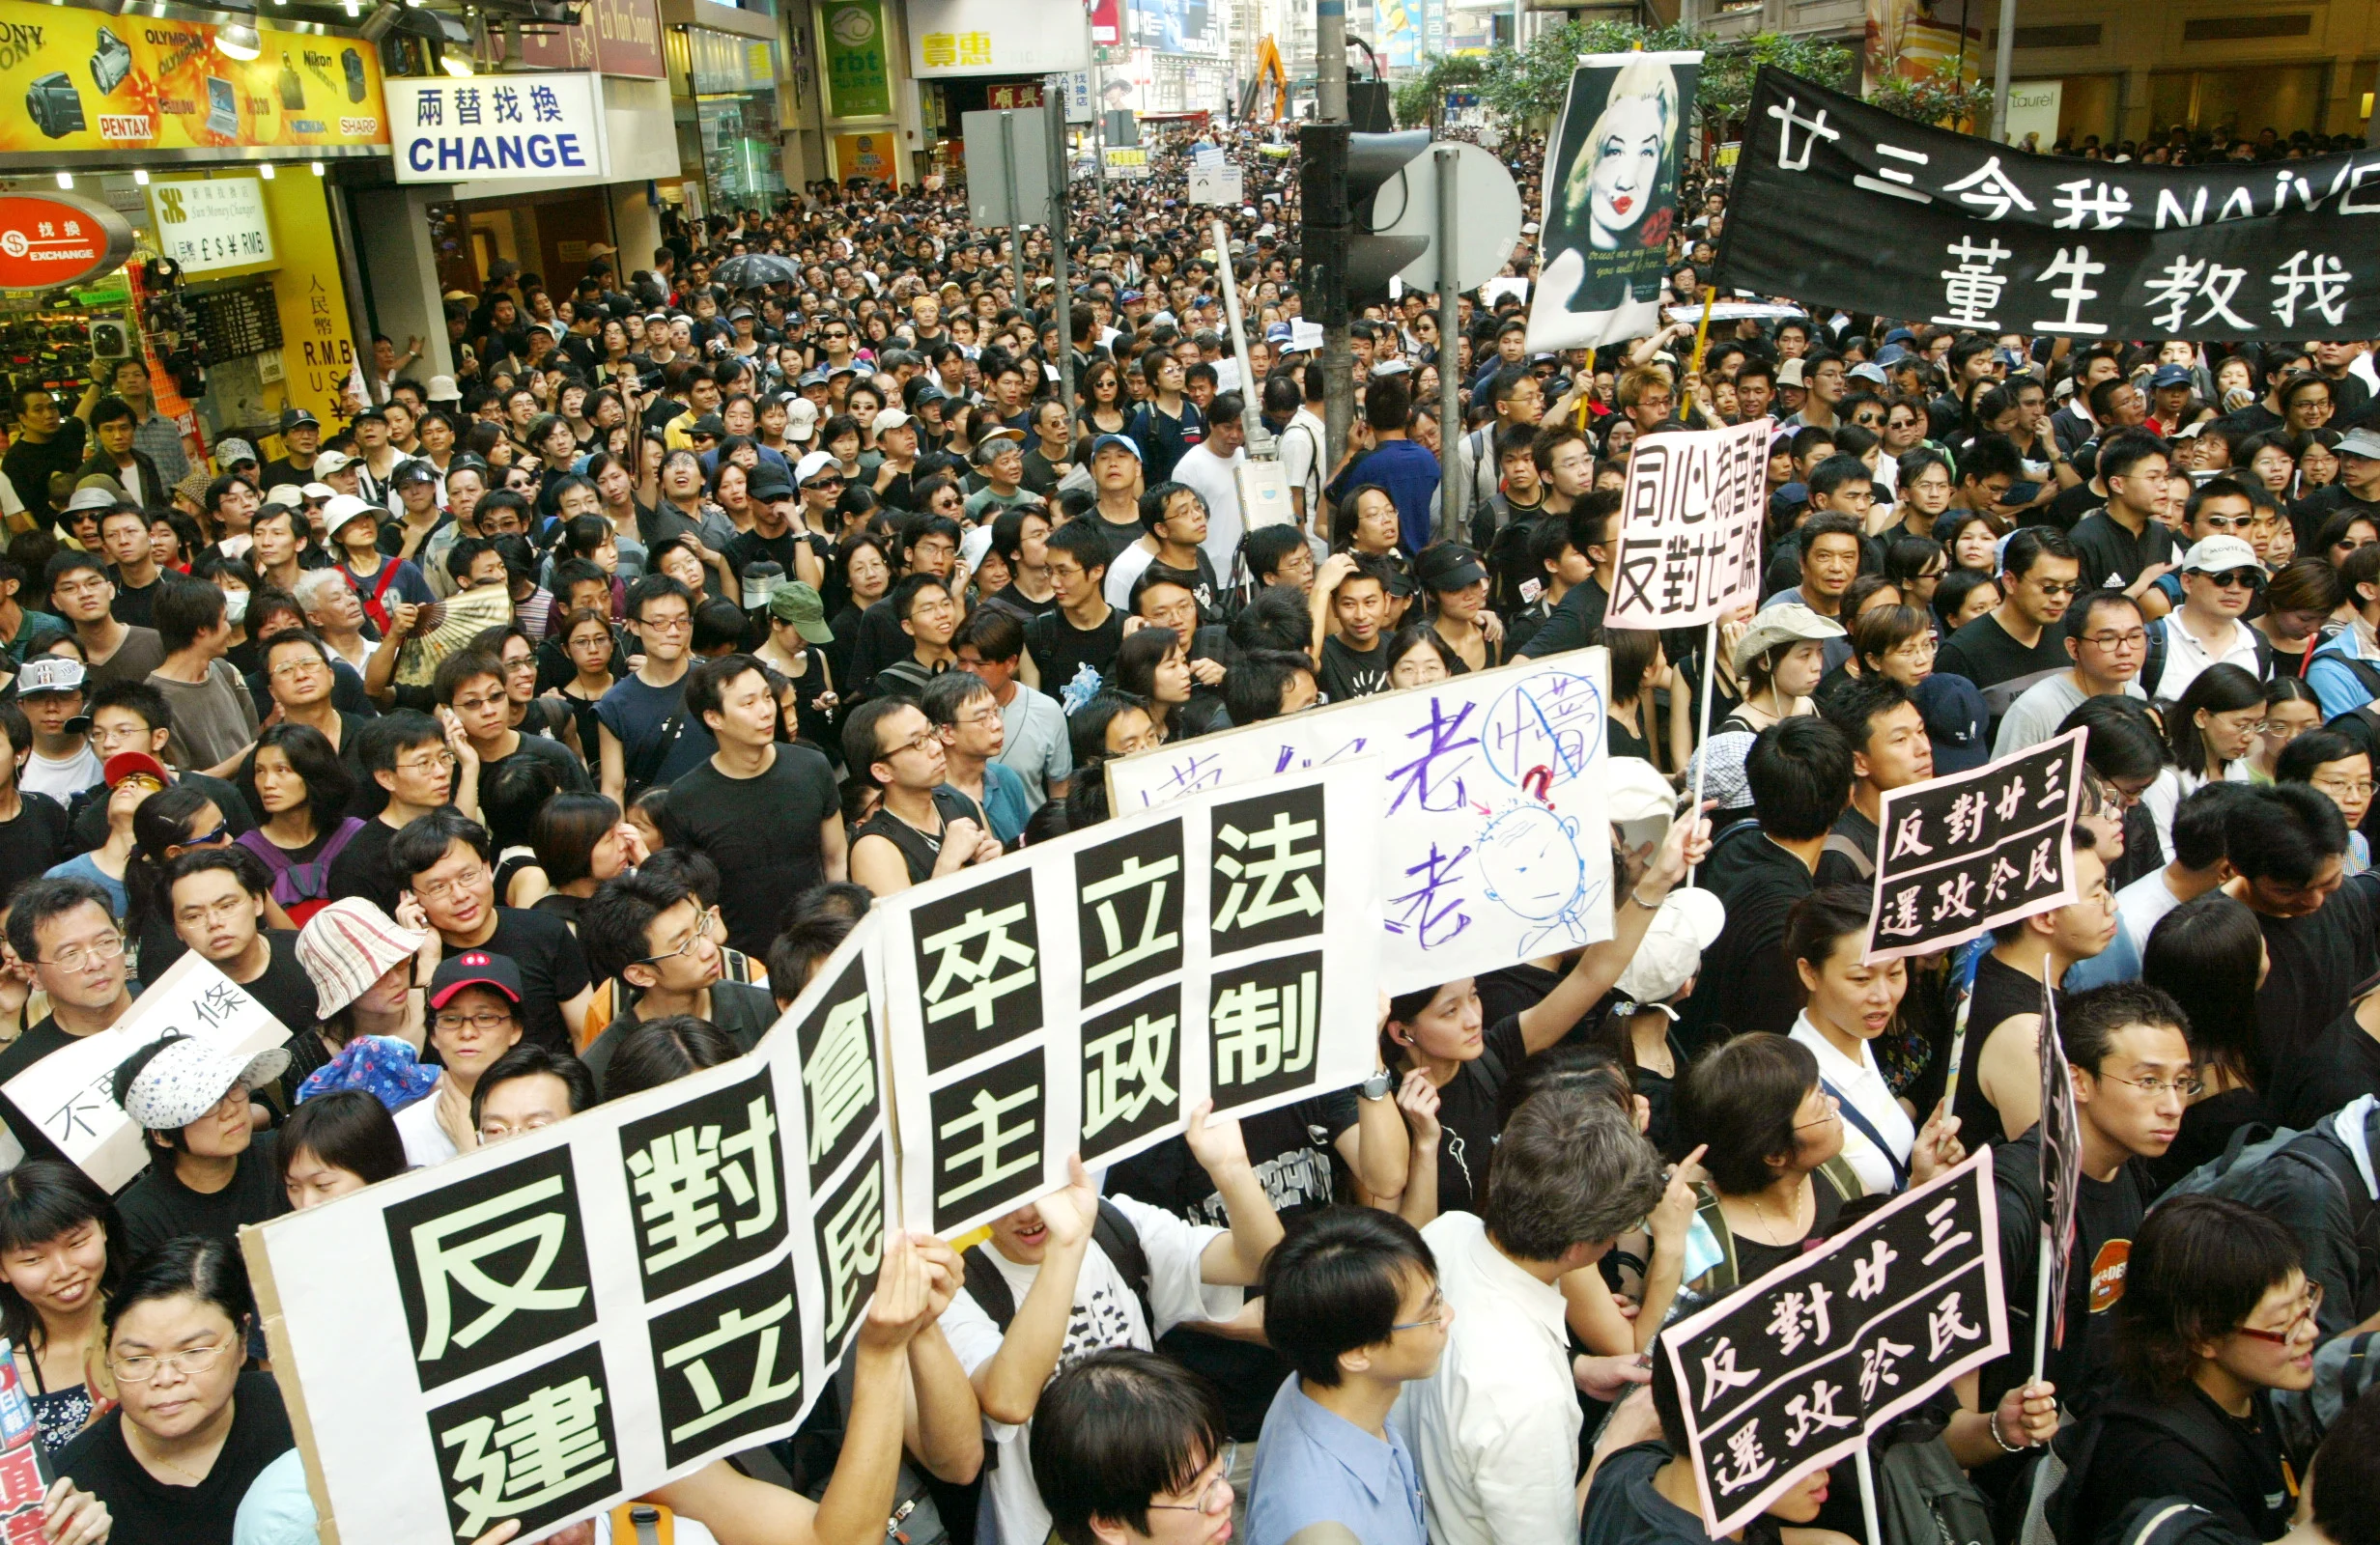 הפגנות בהונג קונג ב ;2003